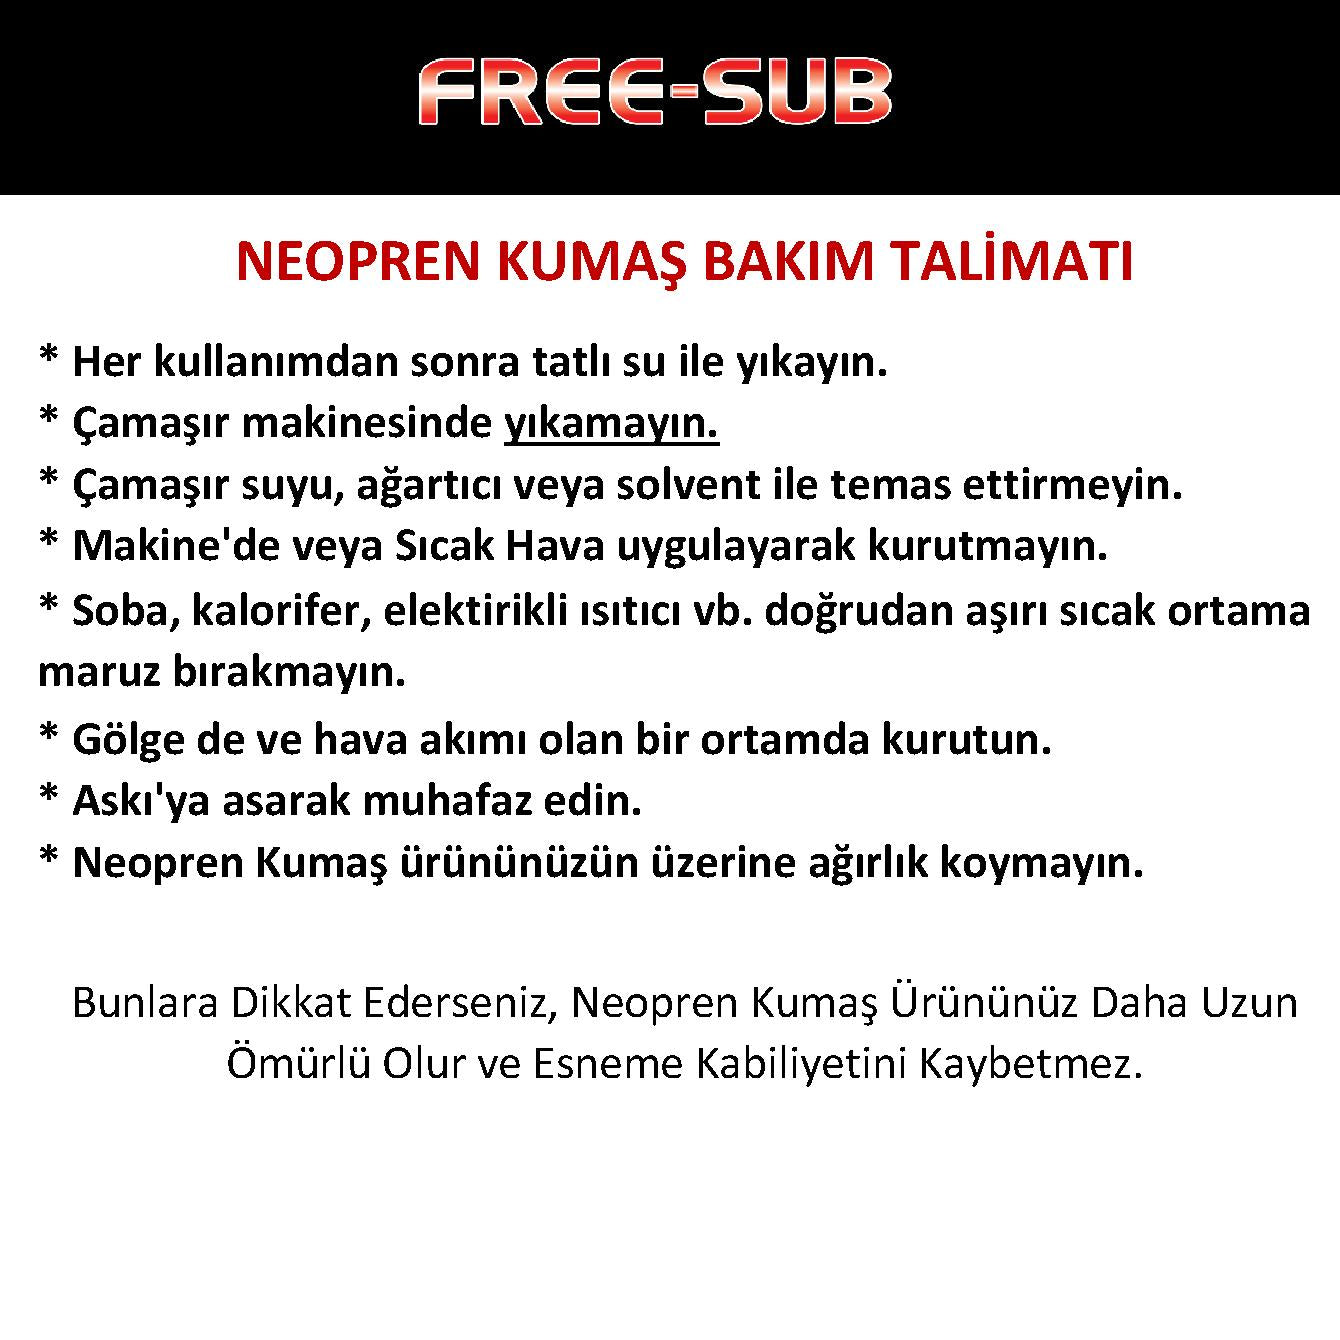 Free-Sub Güderi Camo Dalış Eldiveni - Dalış Elbisesi Market